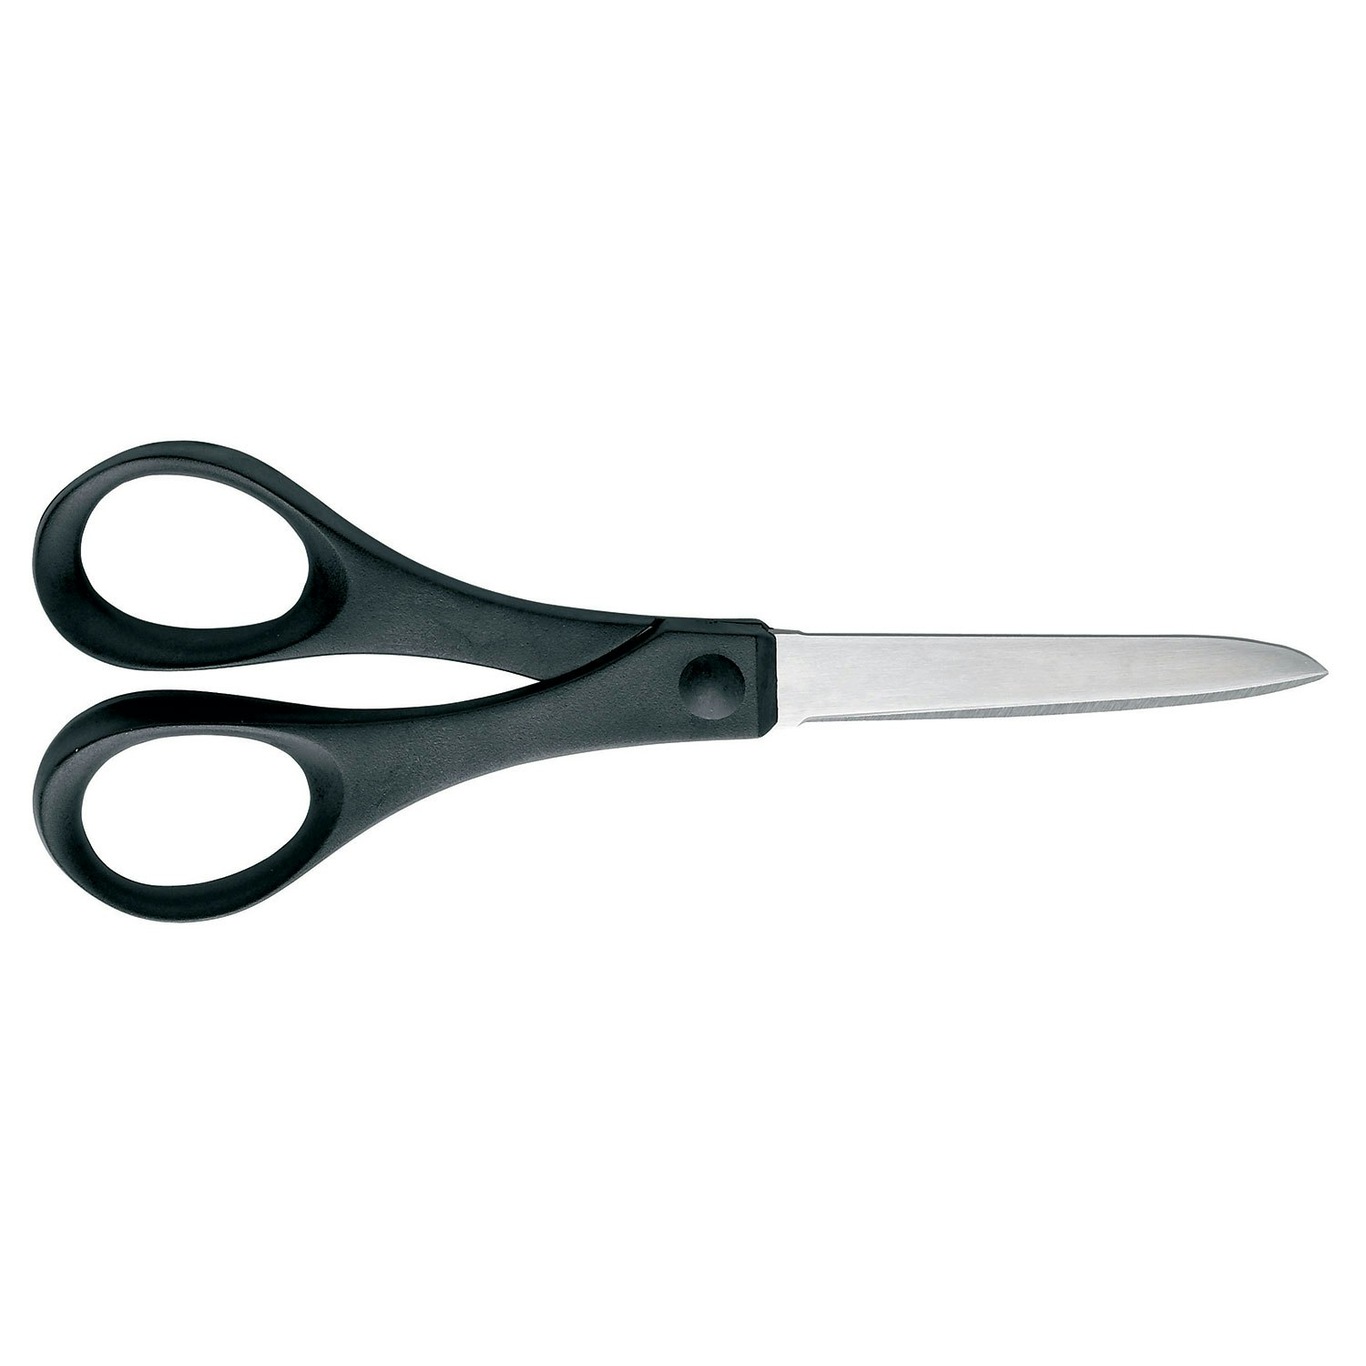 https://royaldesign.com/image/2/fiskars-essential-paper-scissors-18-cm-0?w=800&quality=80